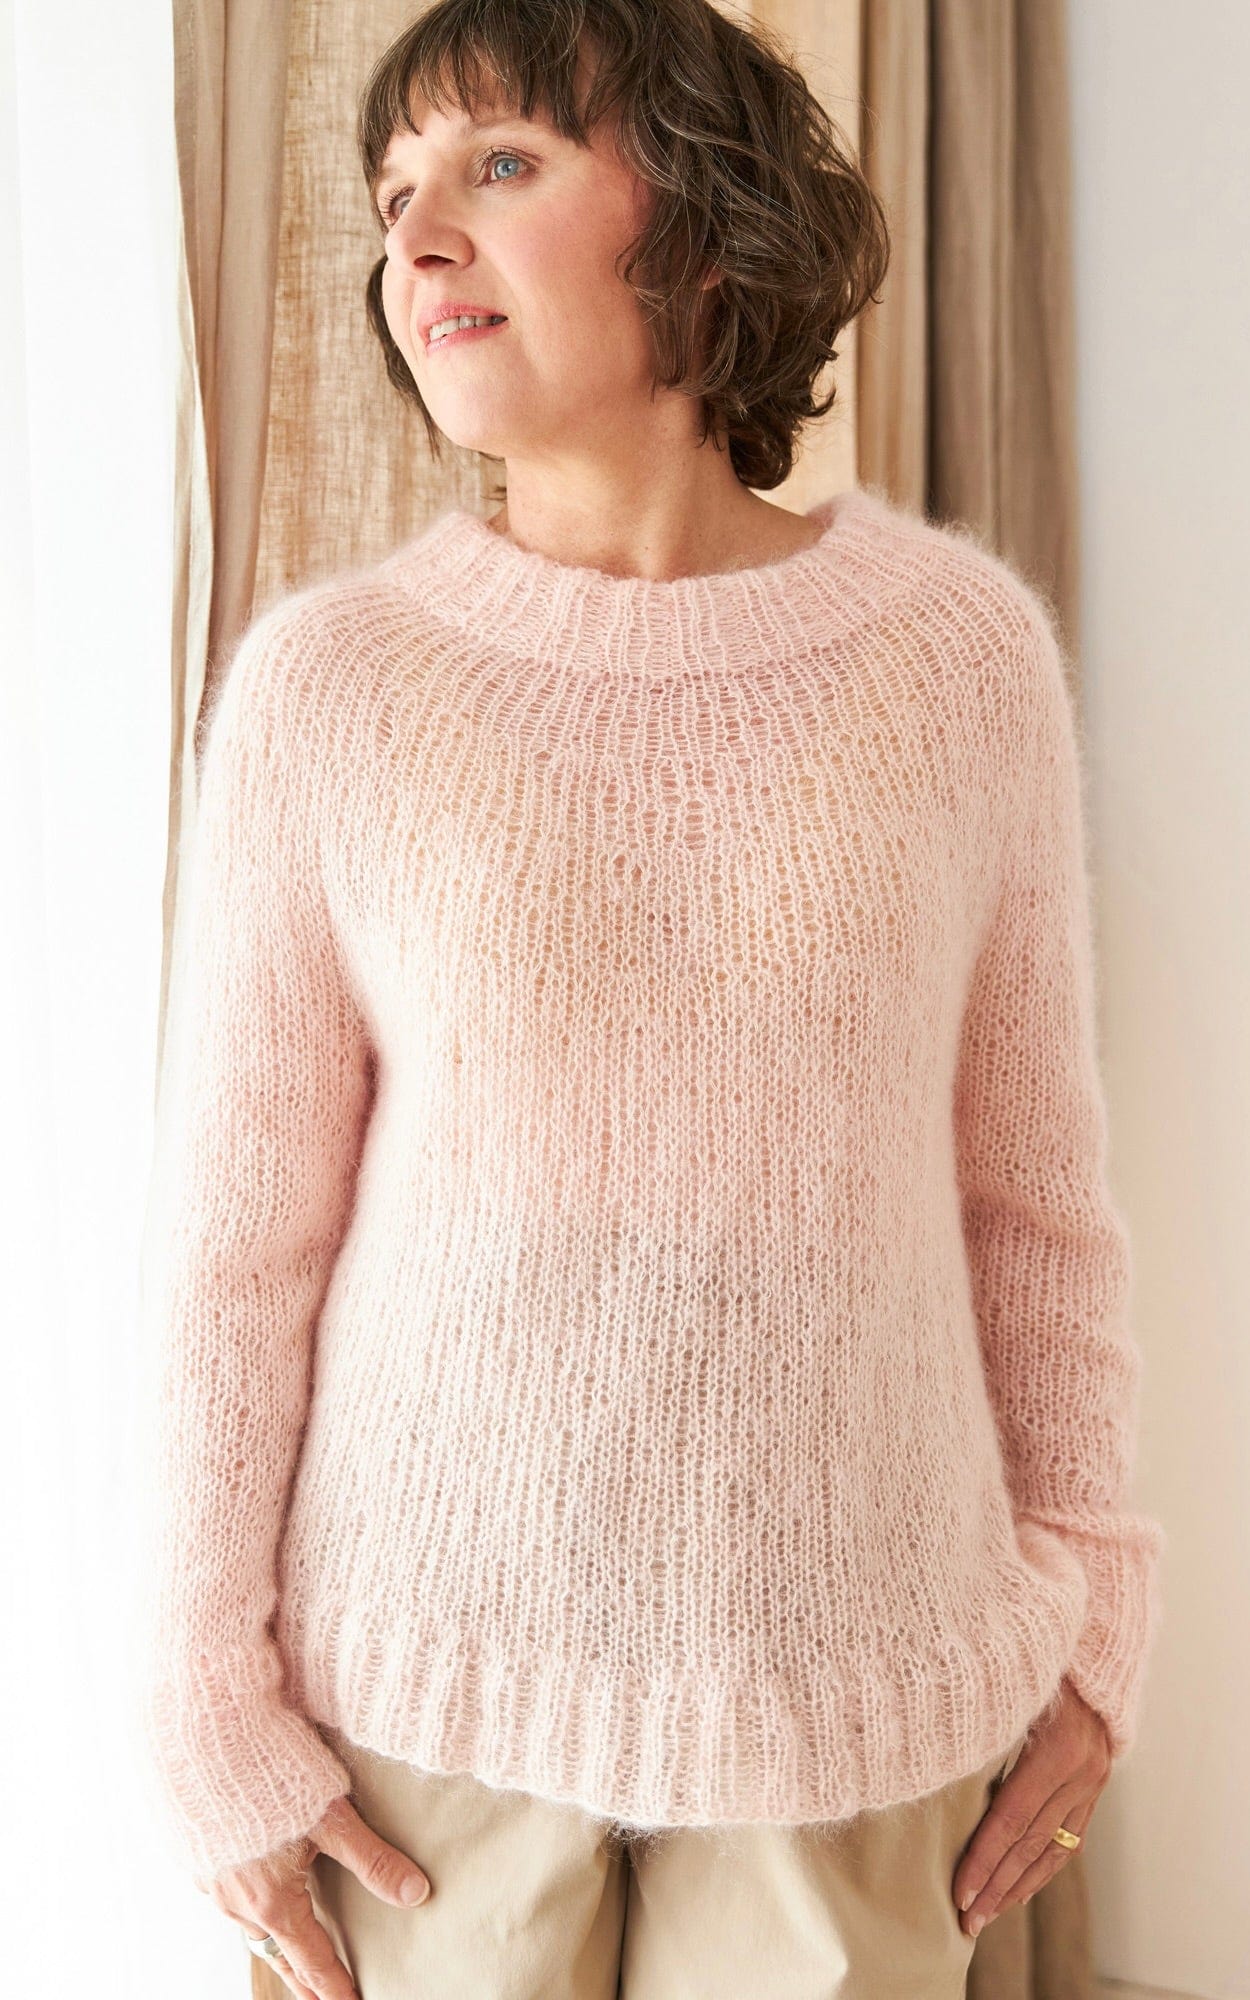 Mapala Sweater Mohair Edition - SILKHAIR - Strickset von ROSA P. jetzt online kaufen bei OONIQUE